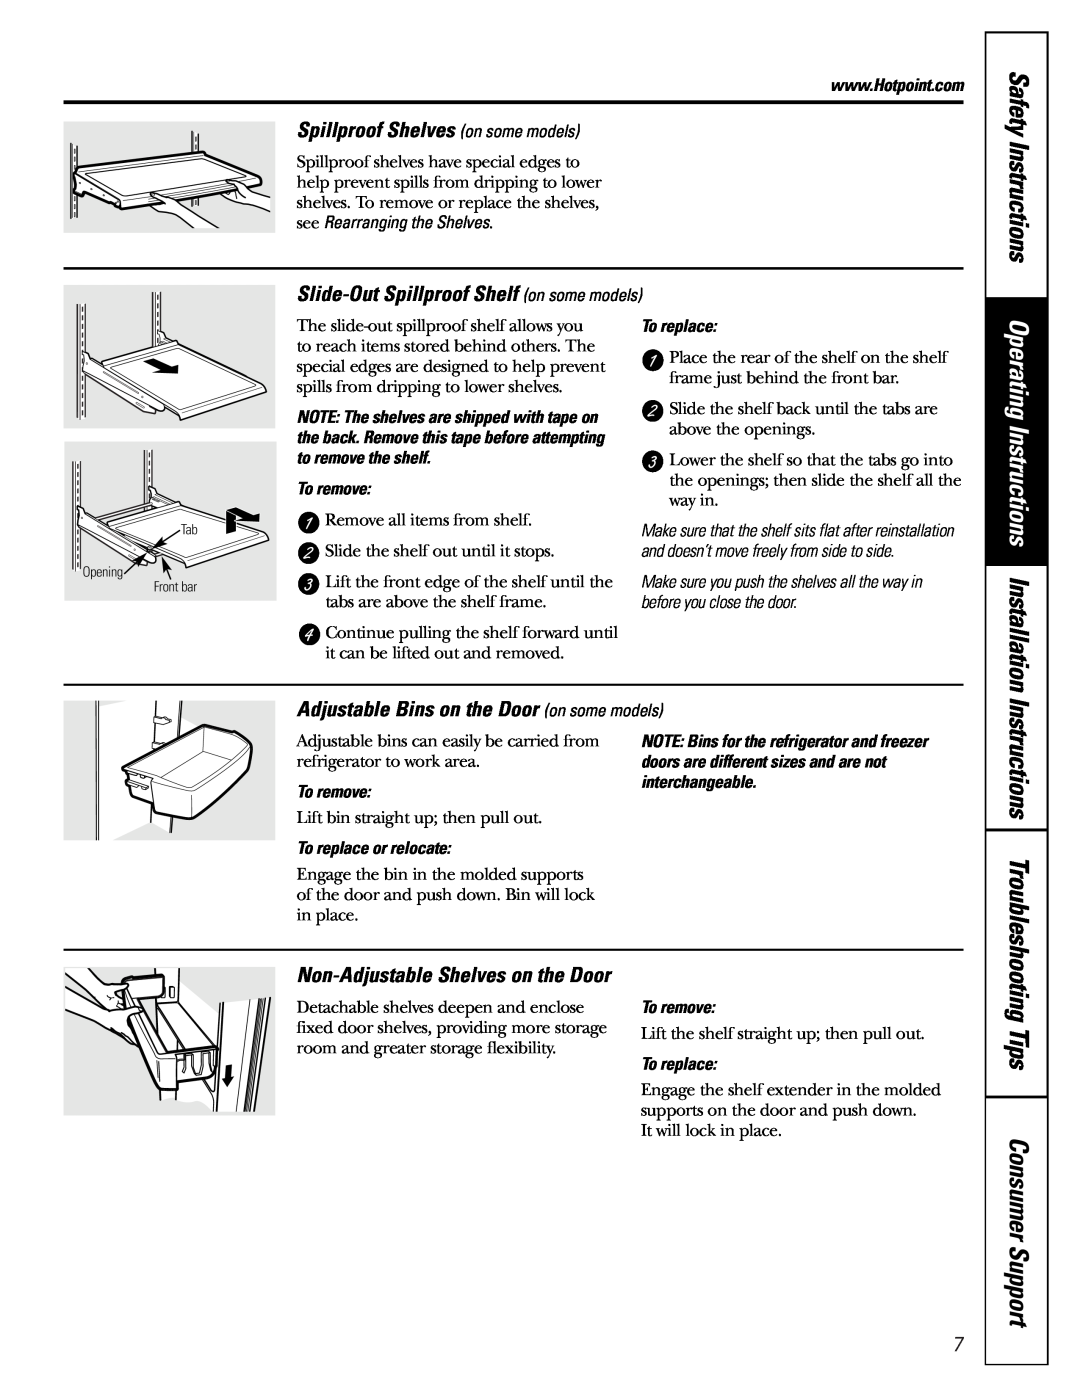 Hotpoint 19 Safety Instructions, Spillproof Shelves on some models, Slide-Out Spillproof Shelf on some models 